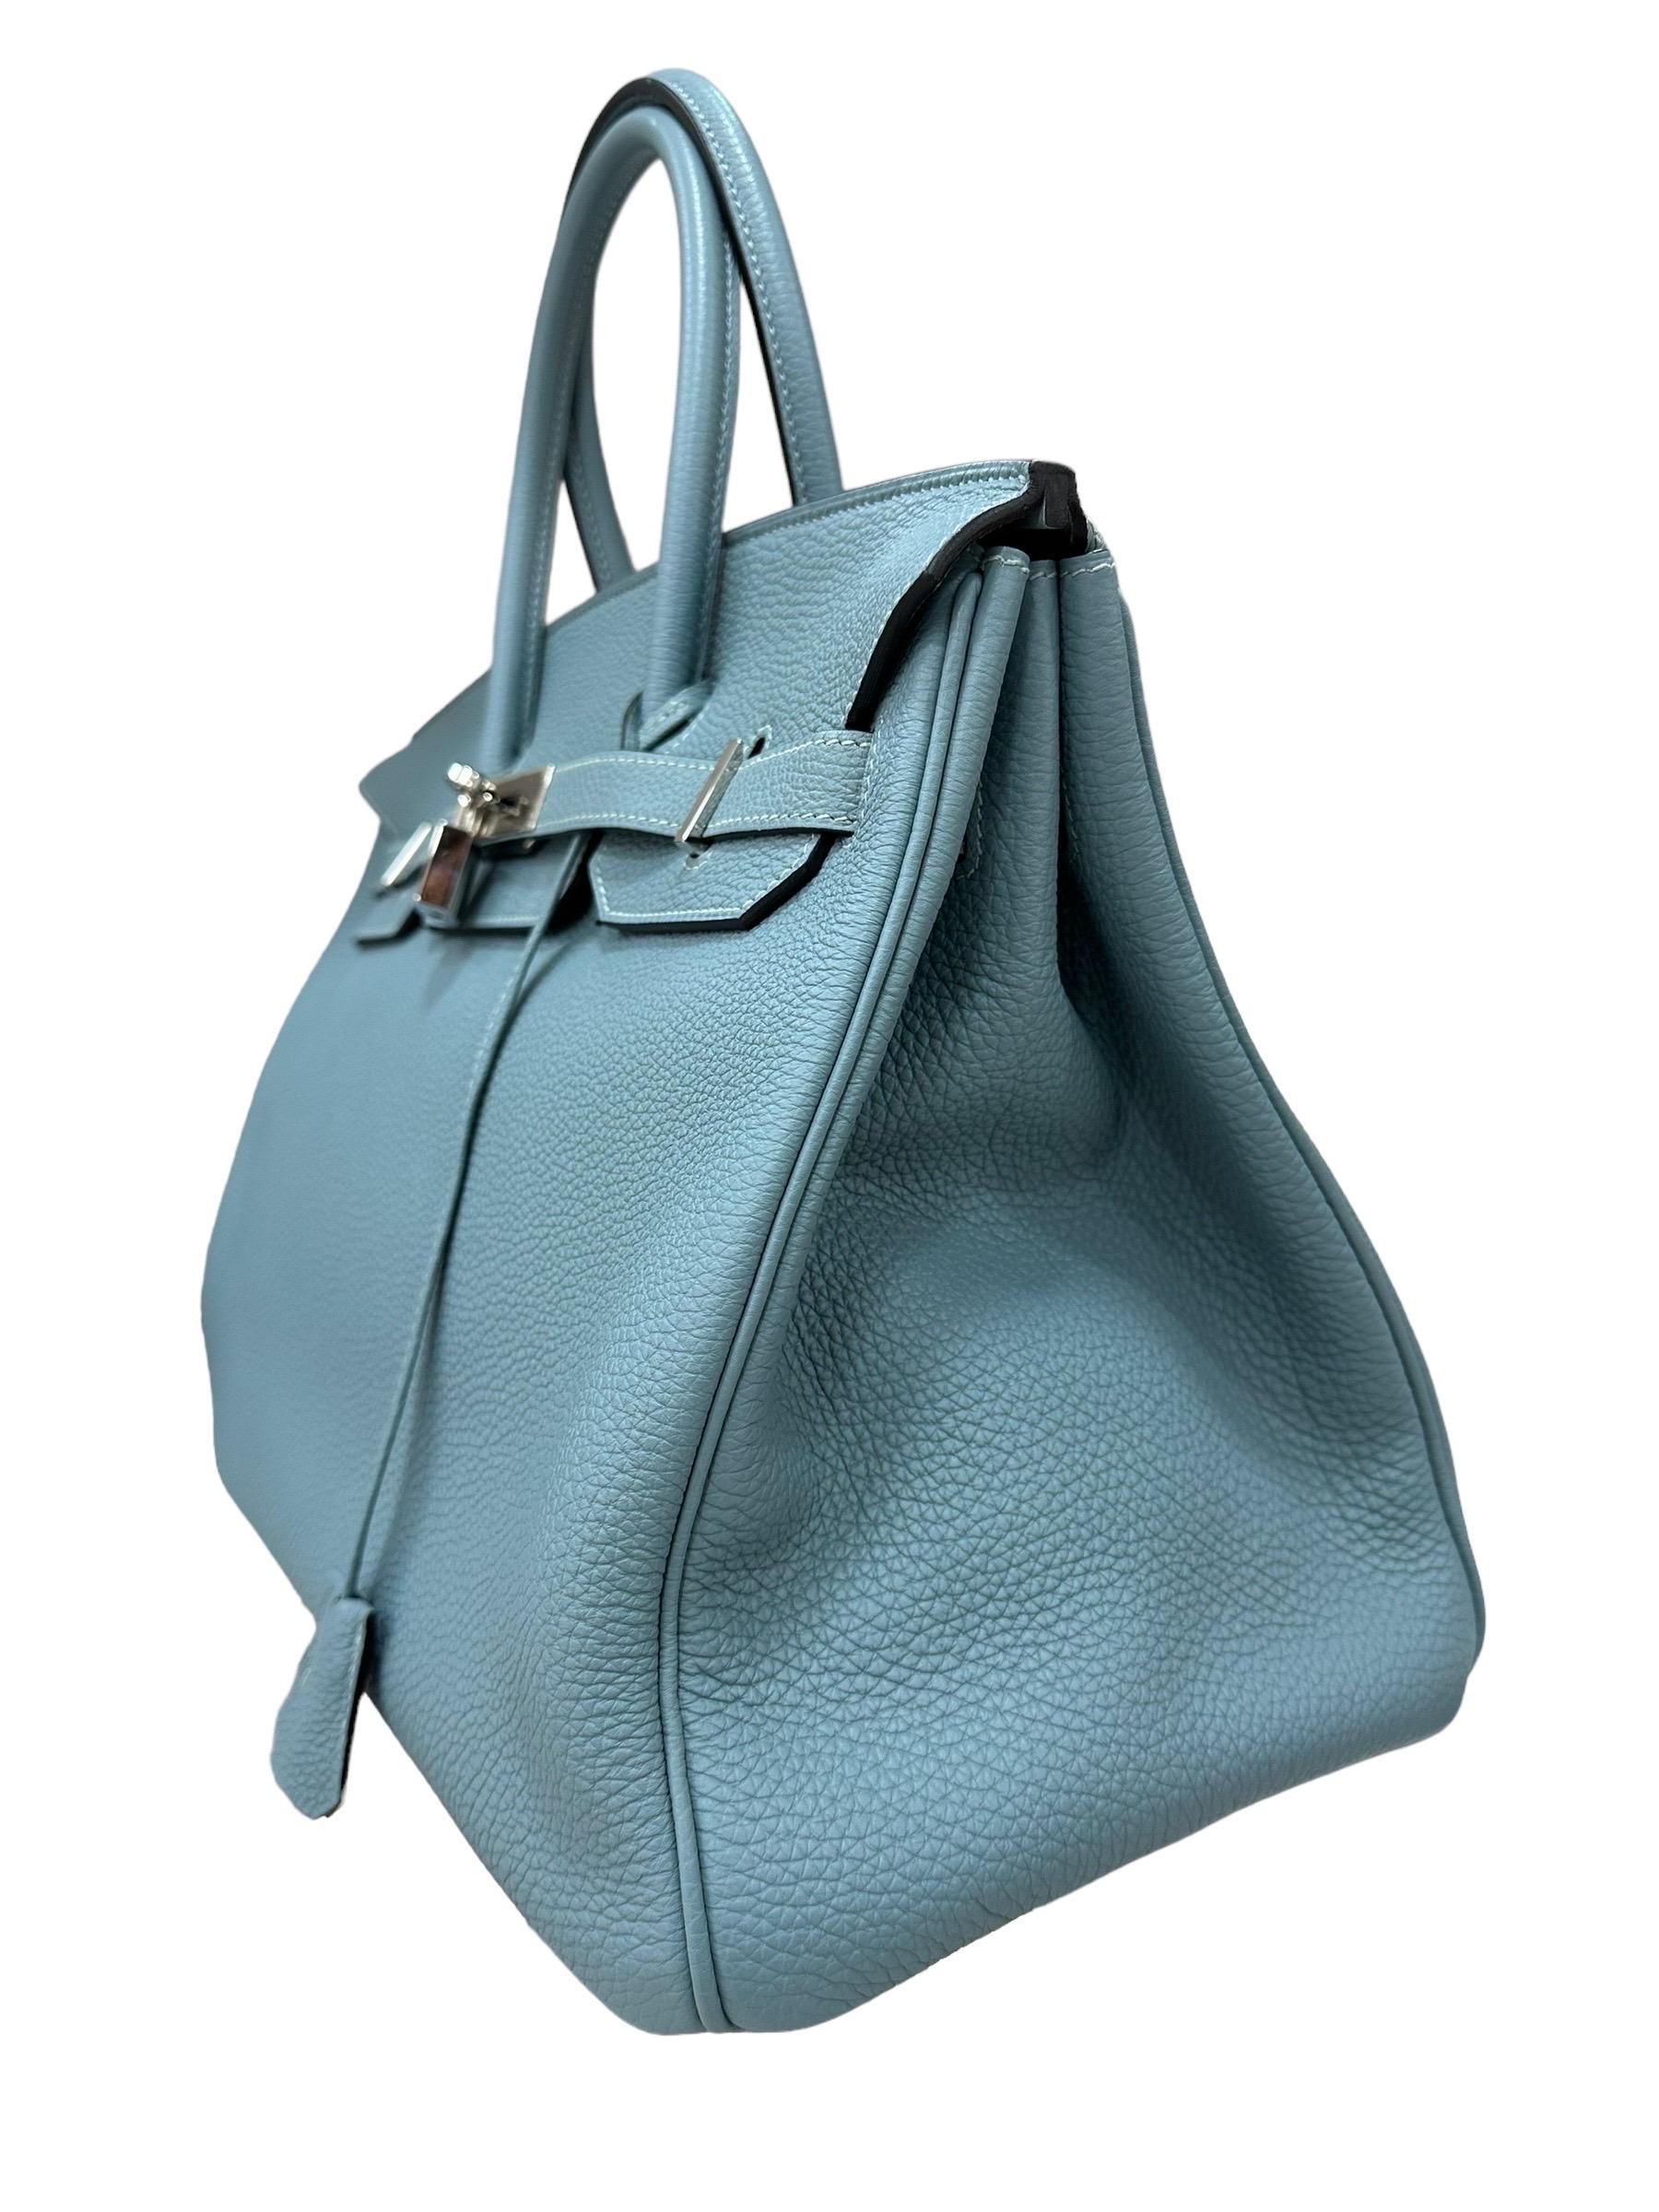 2009 Hermès Birkin 35 Togo Leather Ciel Top Handle Bag For Sale 4